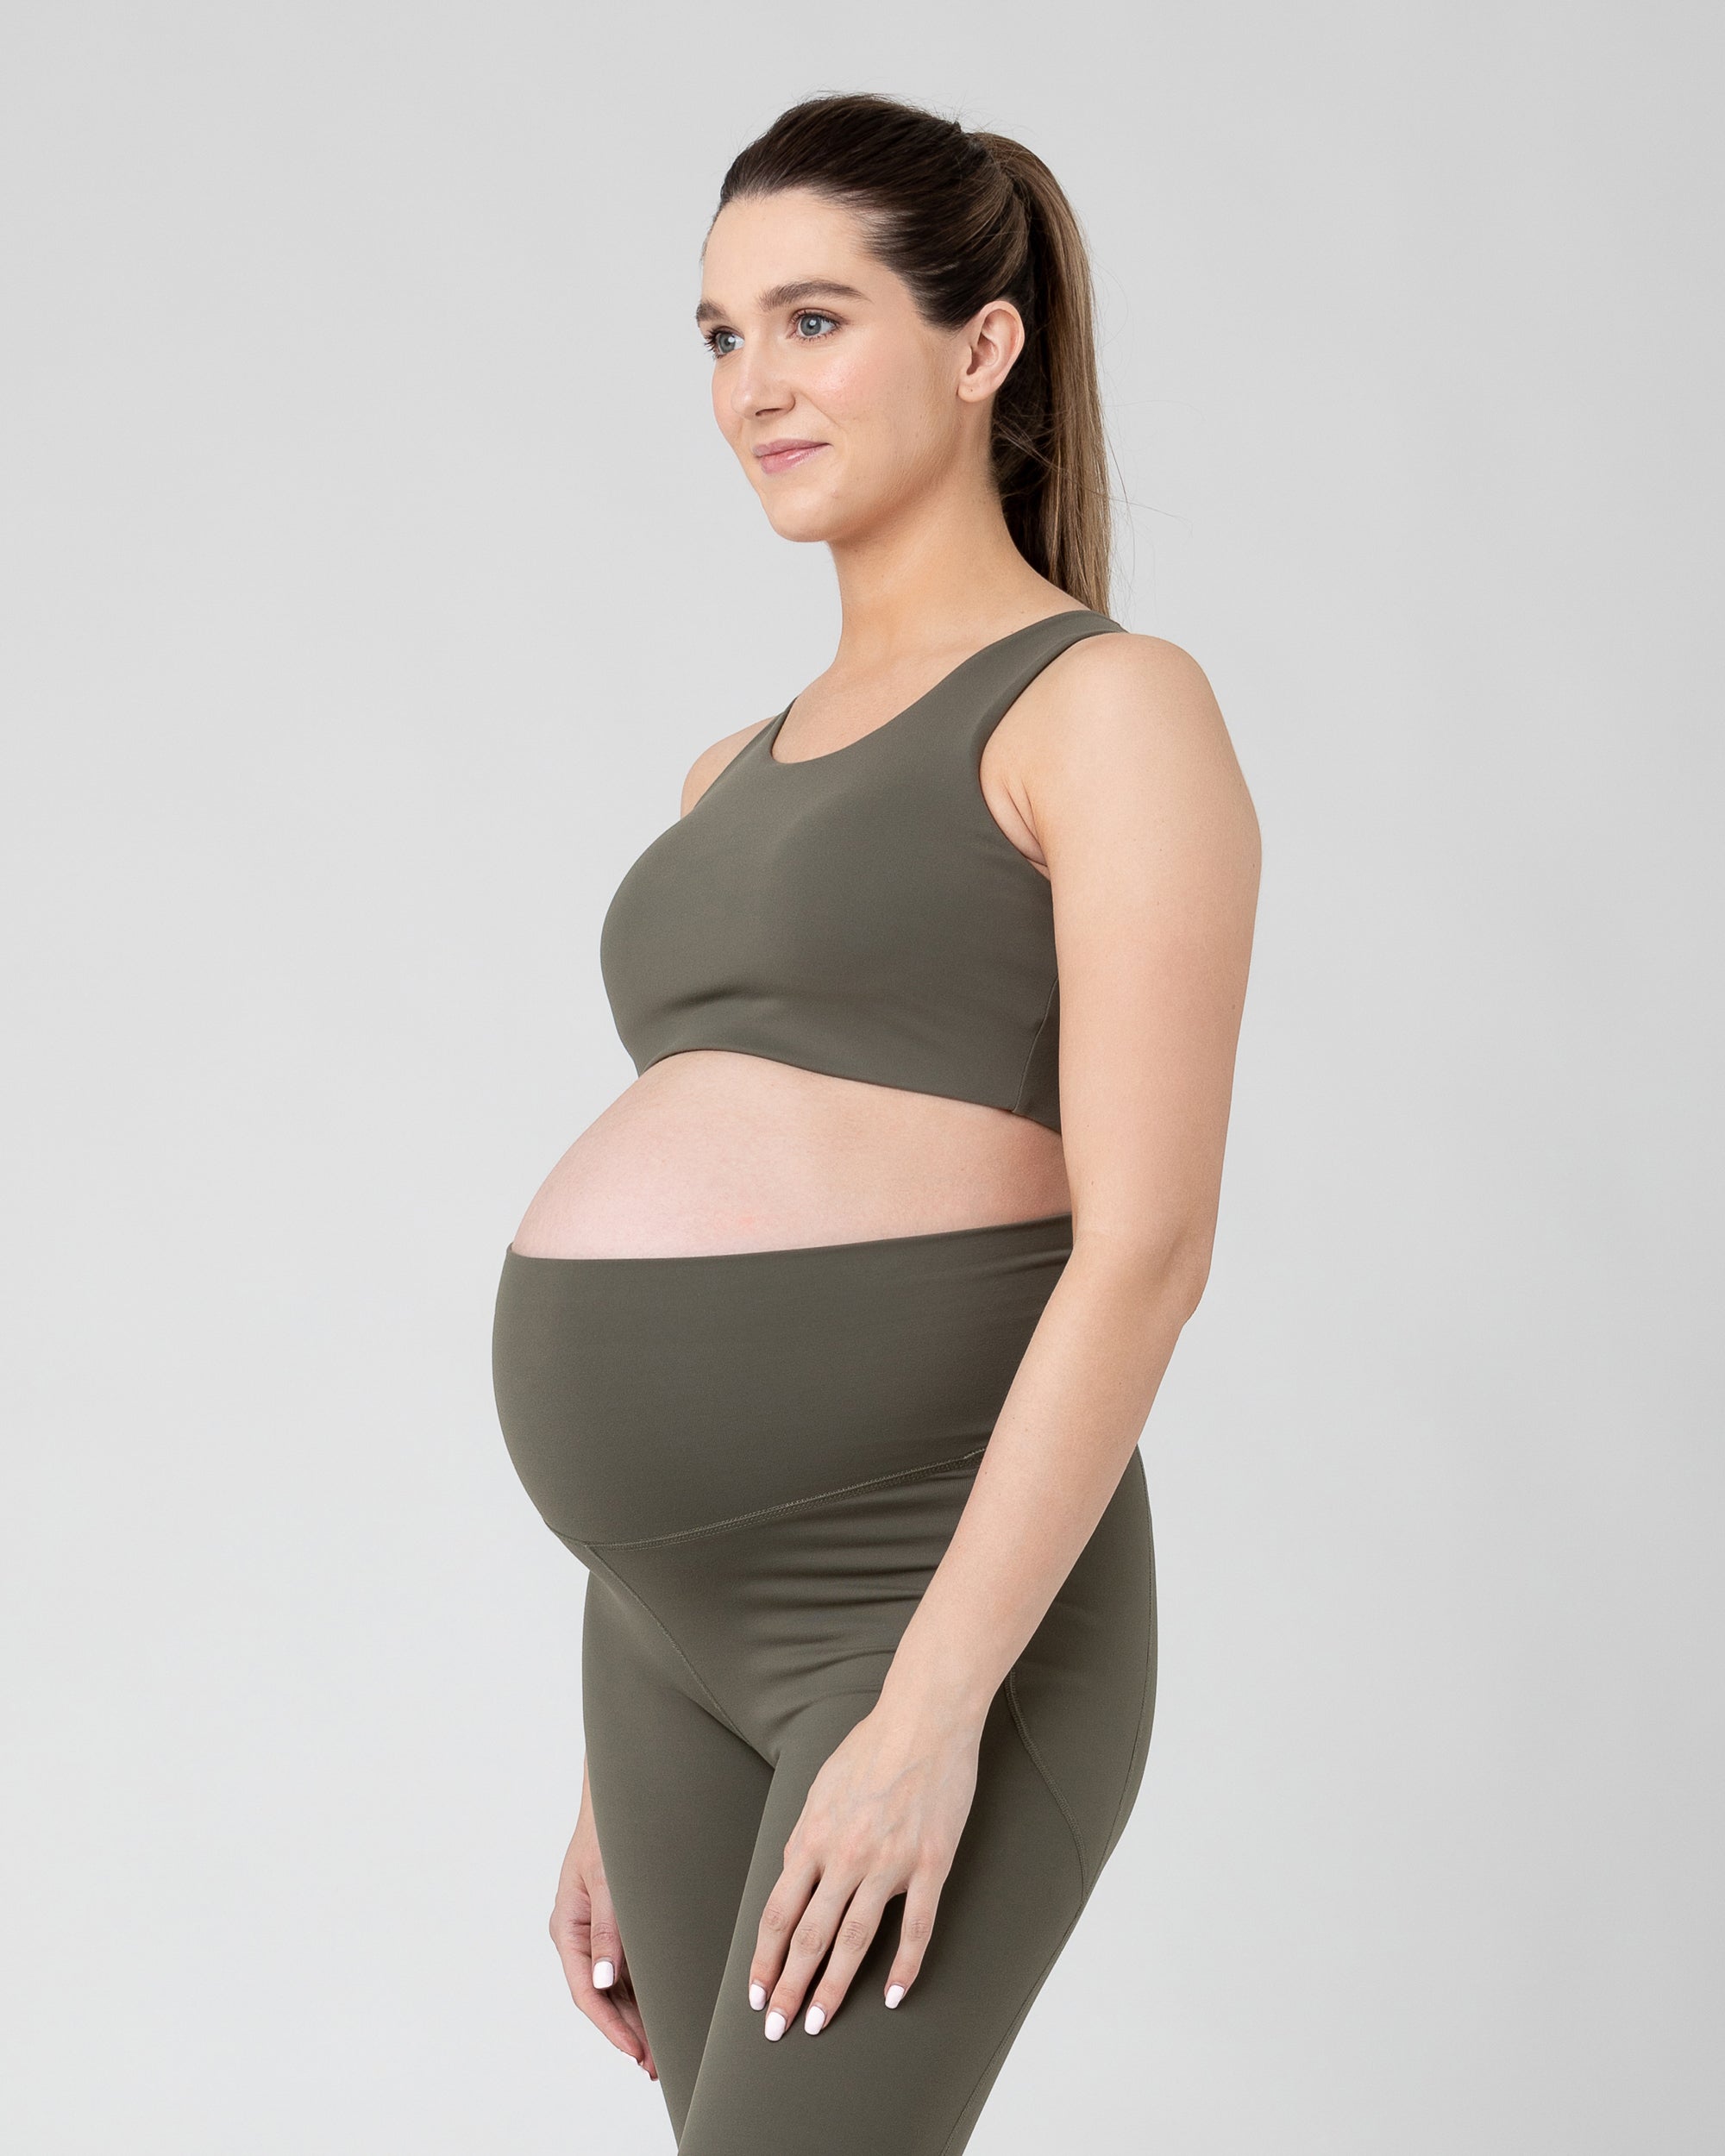 Tempo Lululemon-like, Maternity Legging Ripe – Seven Women Maternity